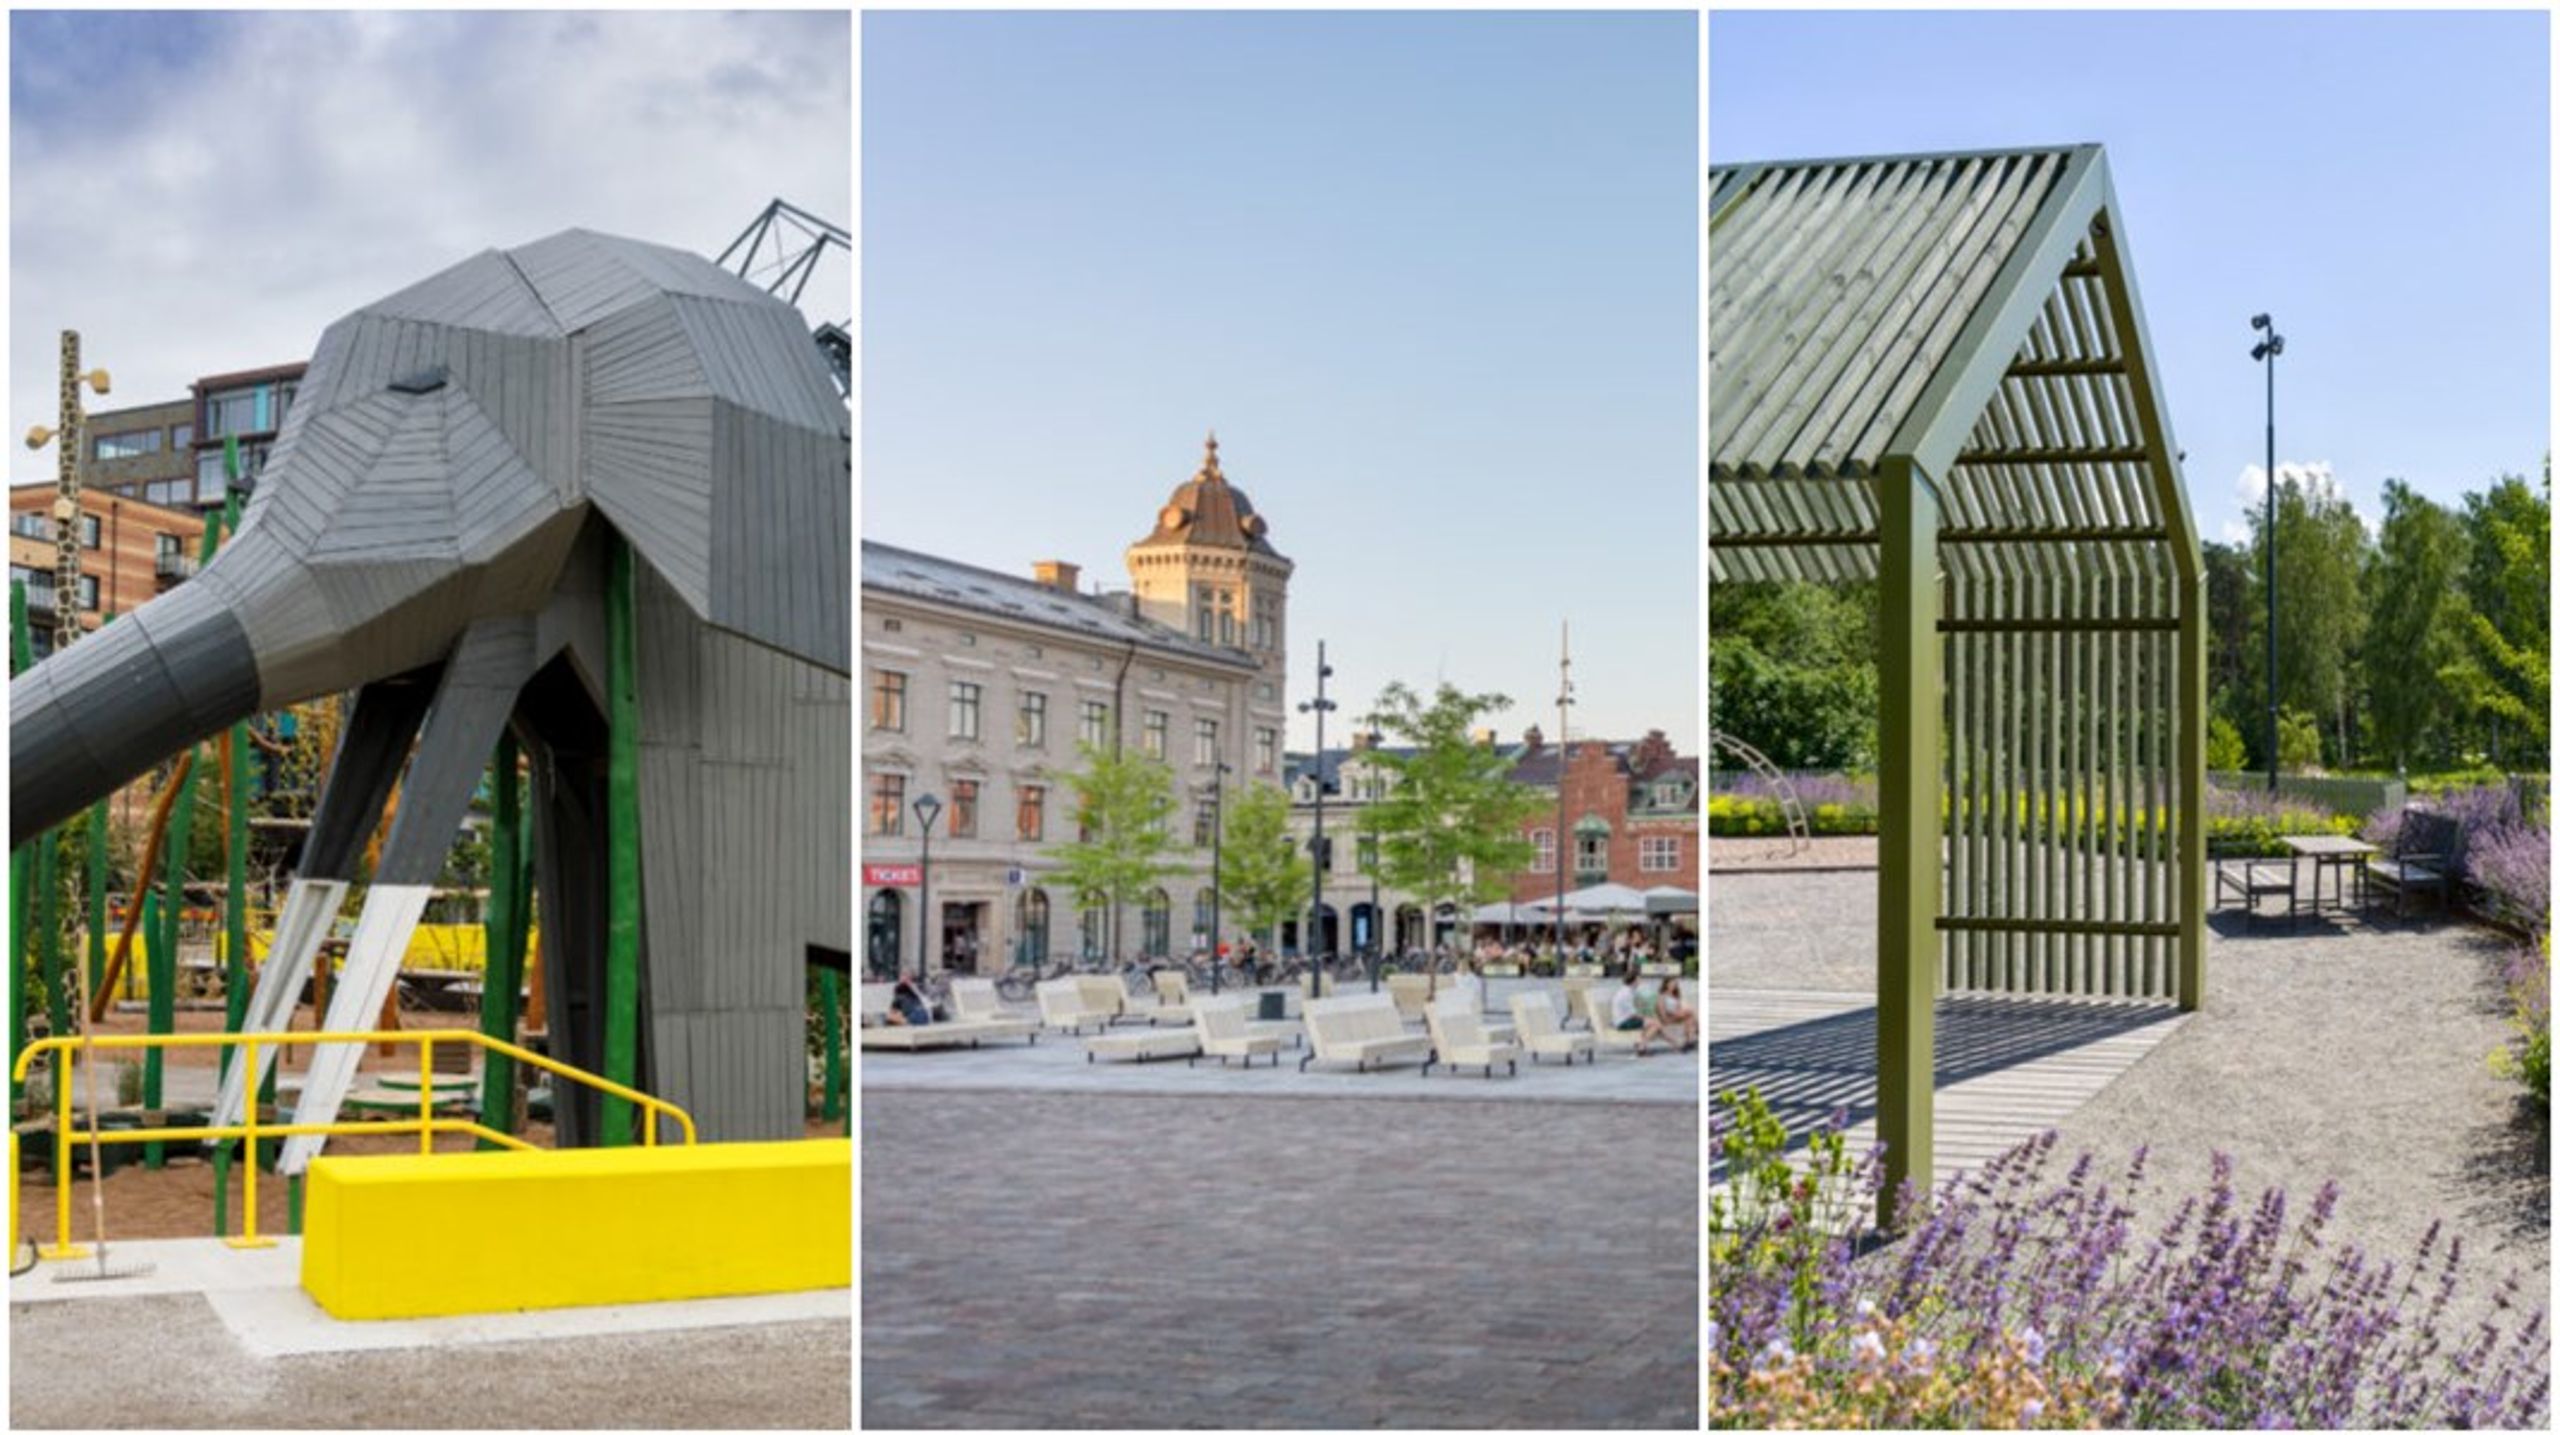 Dockanparken i Helsingborg, Hertig Johans torg i
Skövde och Siegbahnsparken i Uppsala kan vinna Sveriges arkitekters
landskapspris.